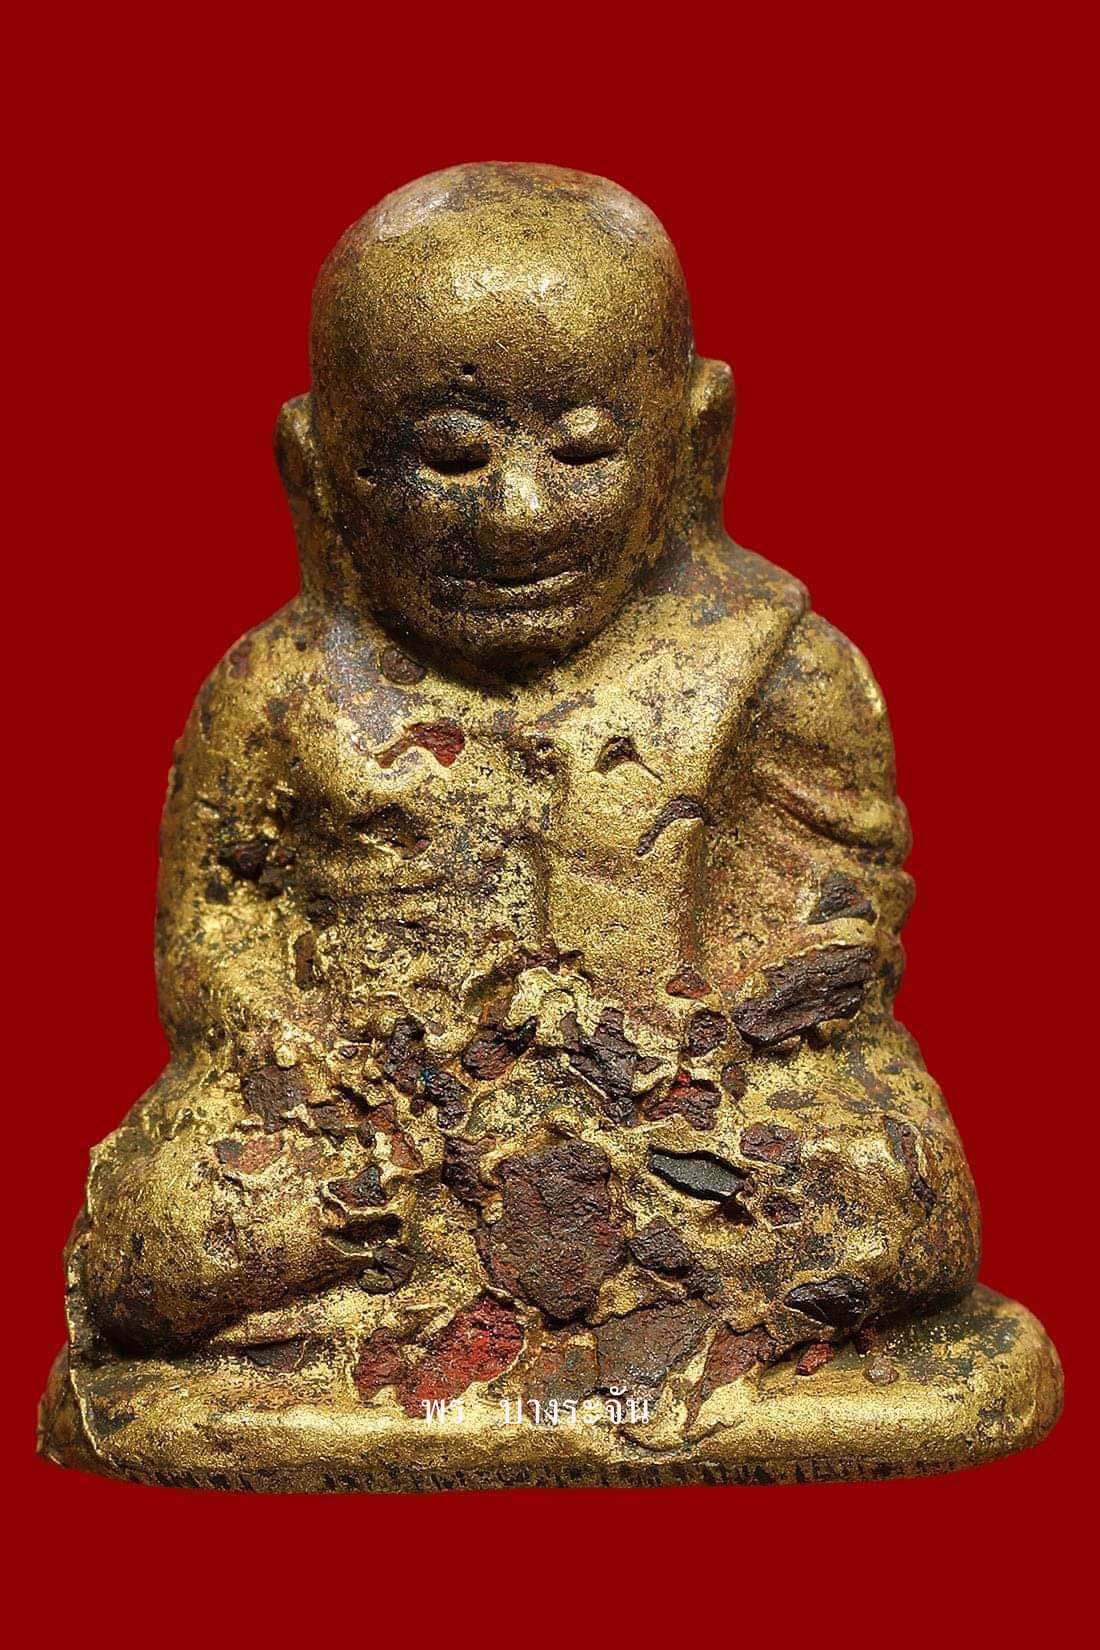 รูปหล่อหลวงพ่อเงินบางคลาน พิมพ์นิยมแบบมีแร่เห็นพระธาตุ -  เมล็ดทราย phra lp ngern statue wat bangklan antique talisman old thai buddha amulet 銮菩银 财佛, 鑾菩銀 大師